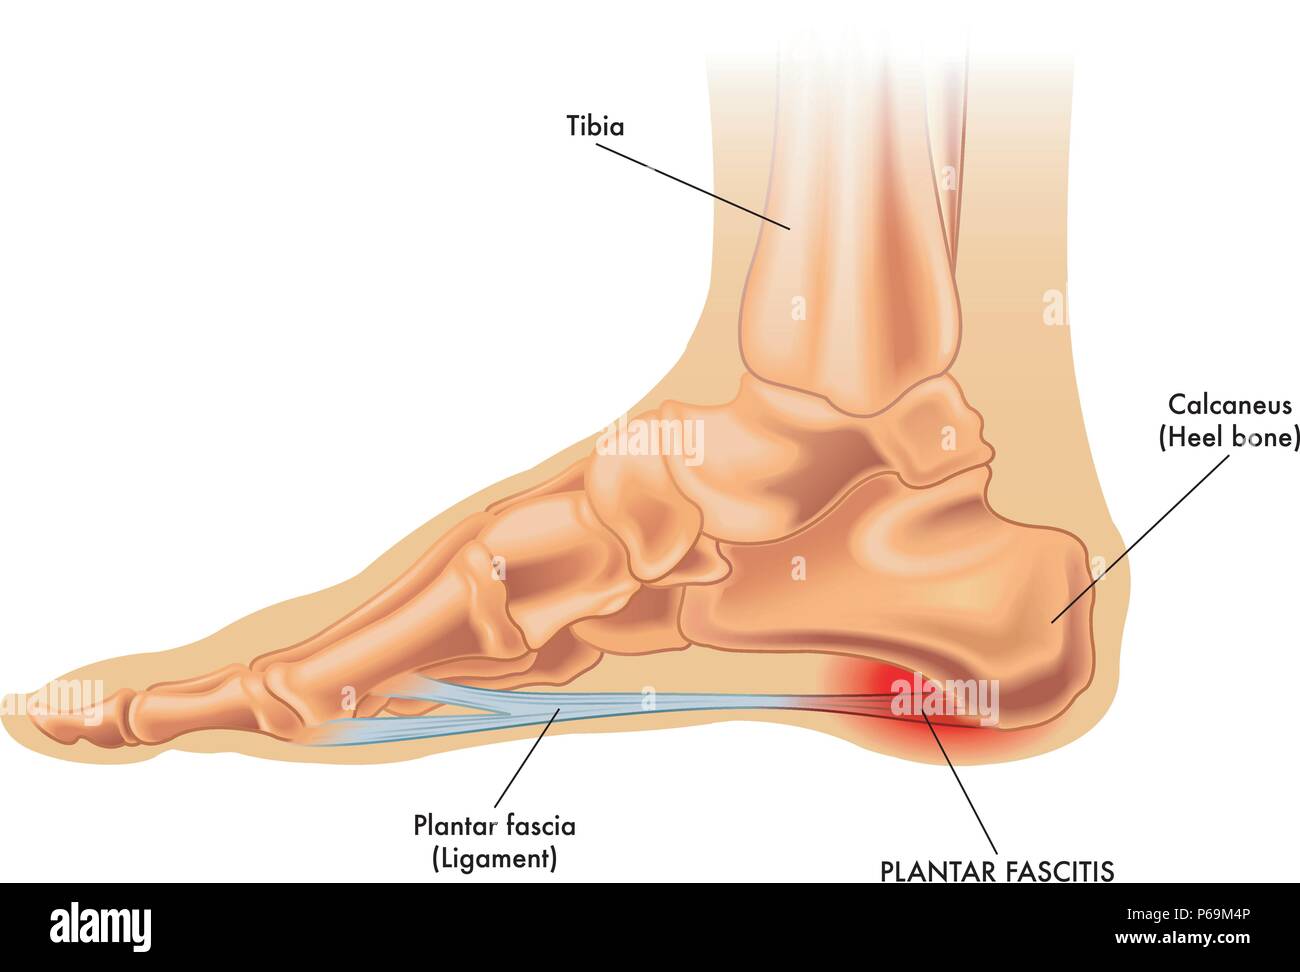 Un vettore Illustrazione medica di anatomia del piede con i sintomi di fasciitis plantare. Illustrazione Vettoriale